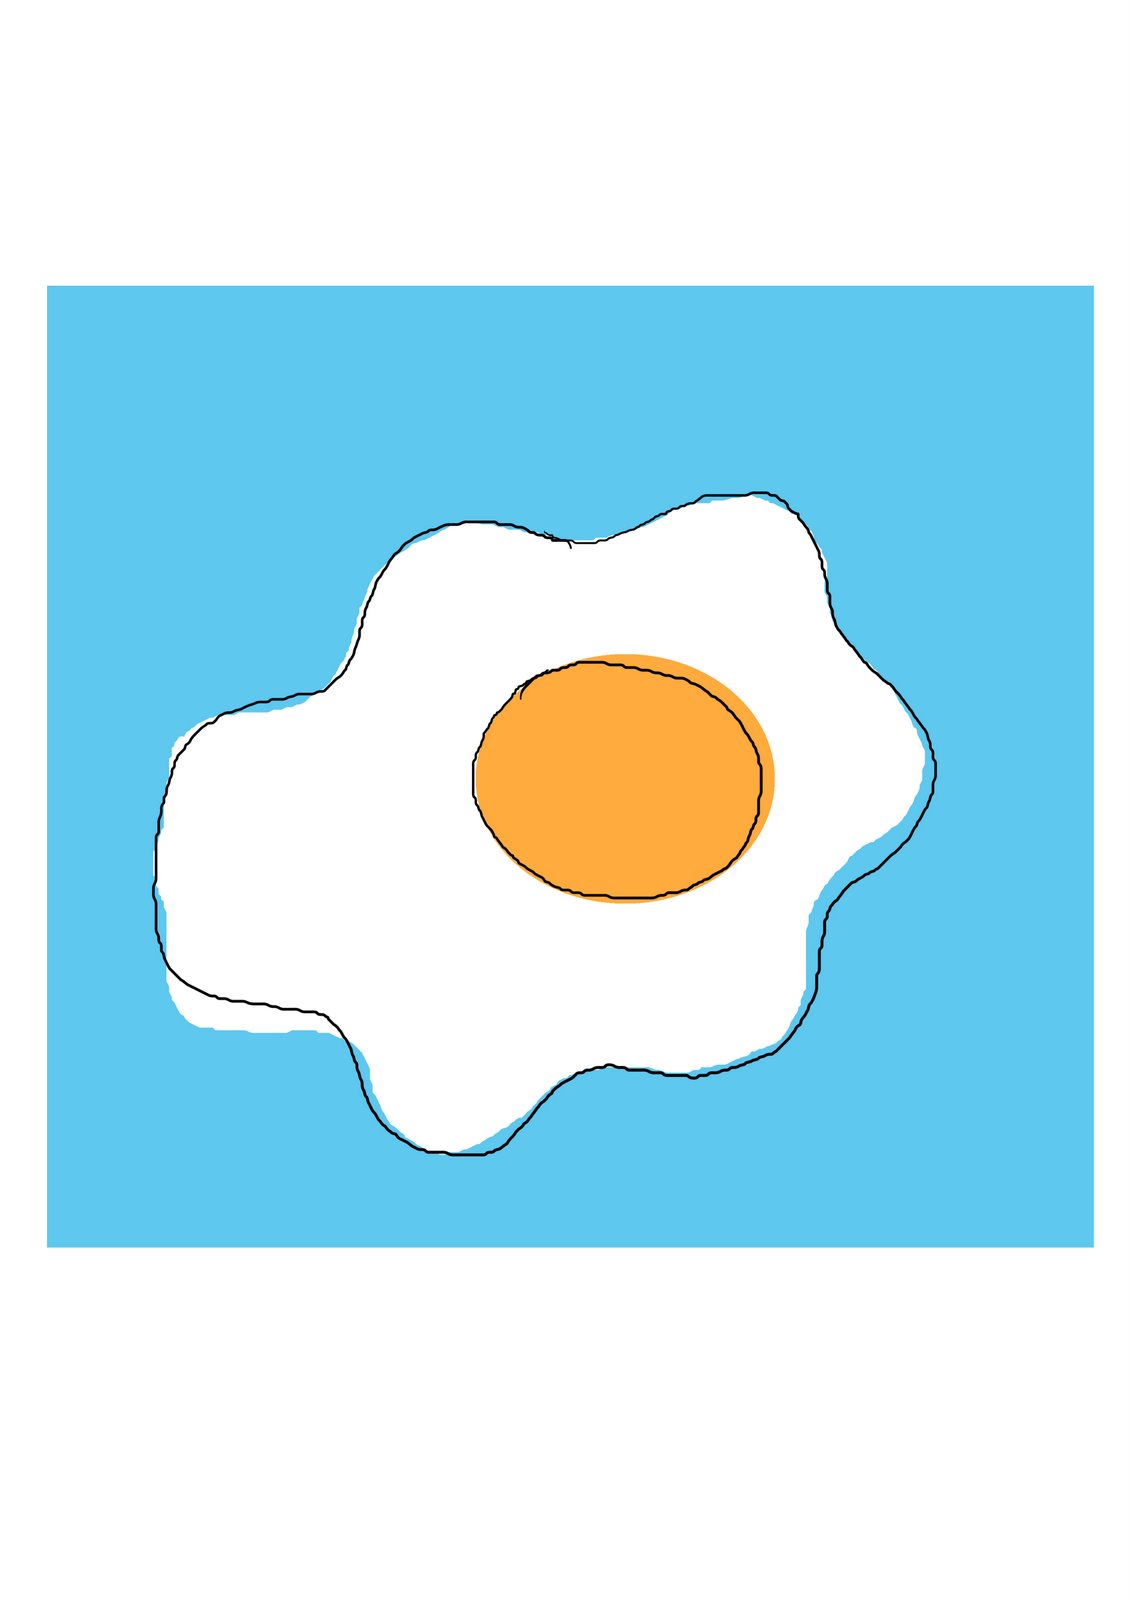 [flattened+egg.jpg]